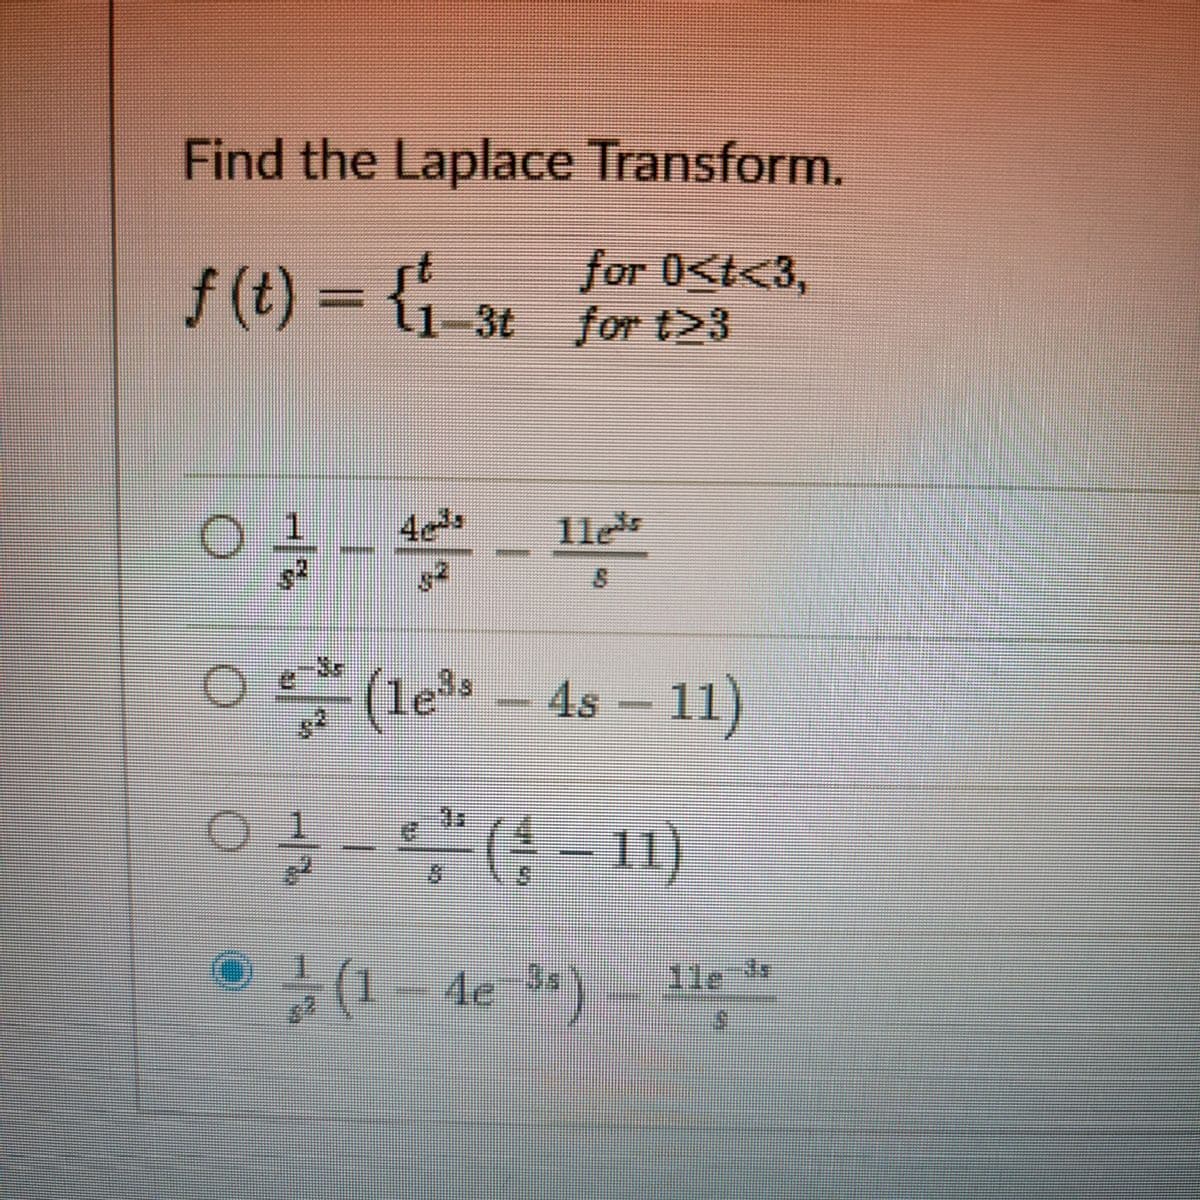 Find the Laplace Transform.
for 0<t<3,
f (t) = {1-3t for t23
1le
O (le – 4s – 11)
-(-11)
(1- de )- 11e
/2
